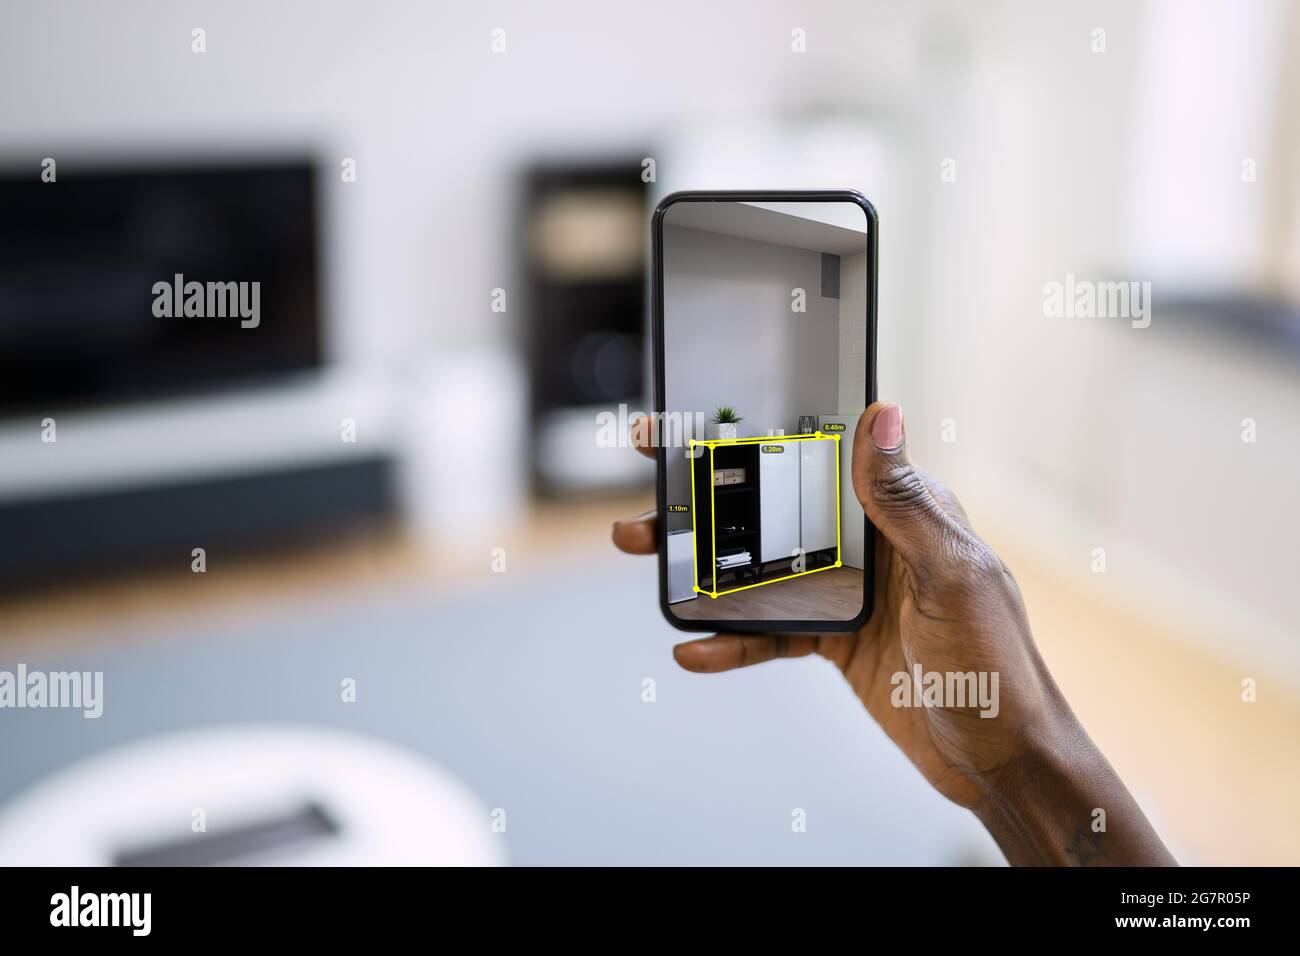 AR Mobile Phone Furniture Measurement App And Virtual Meter Stock Photo